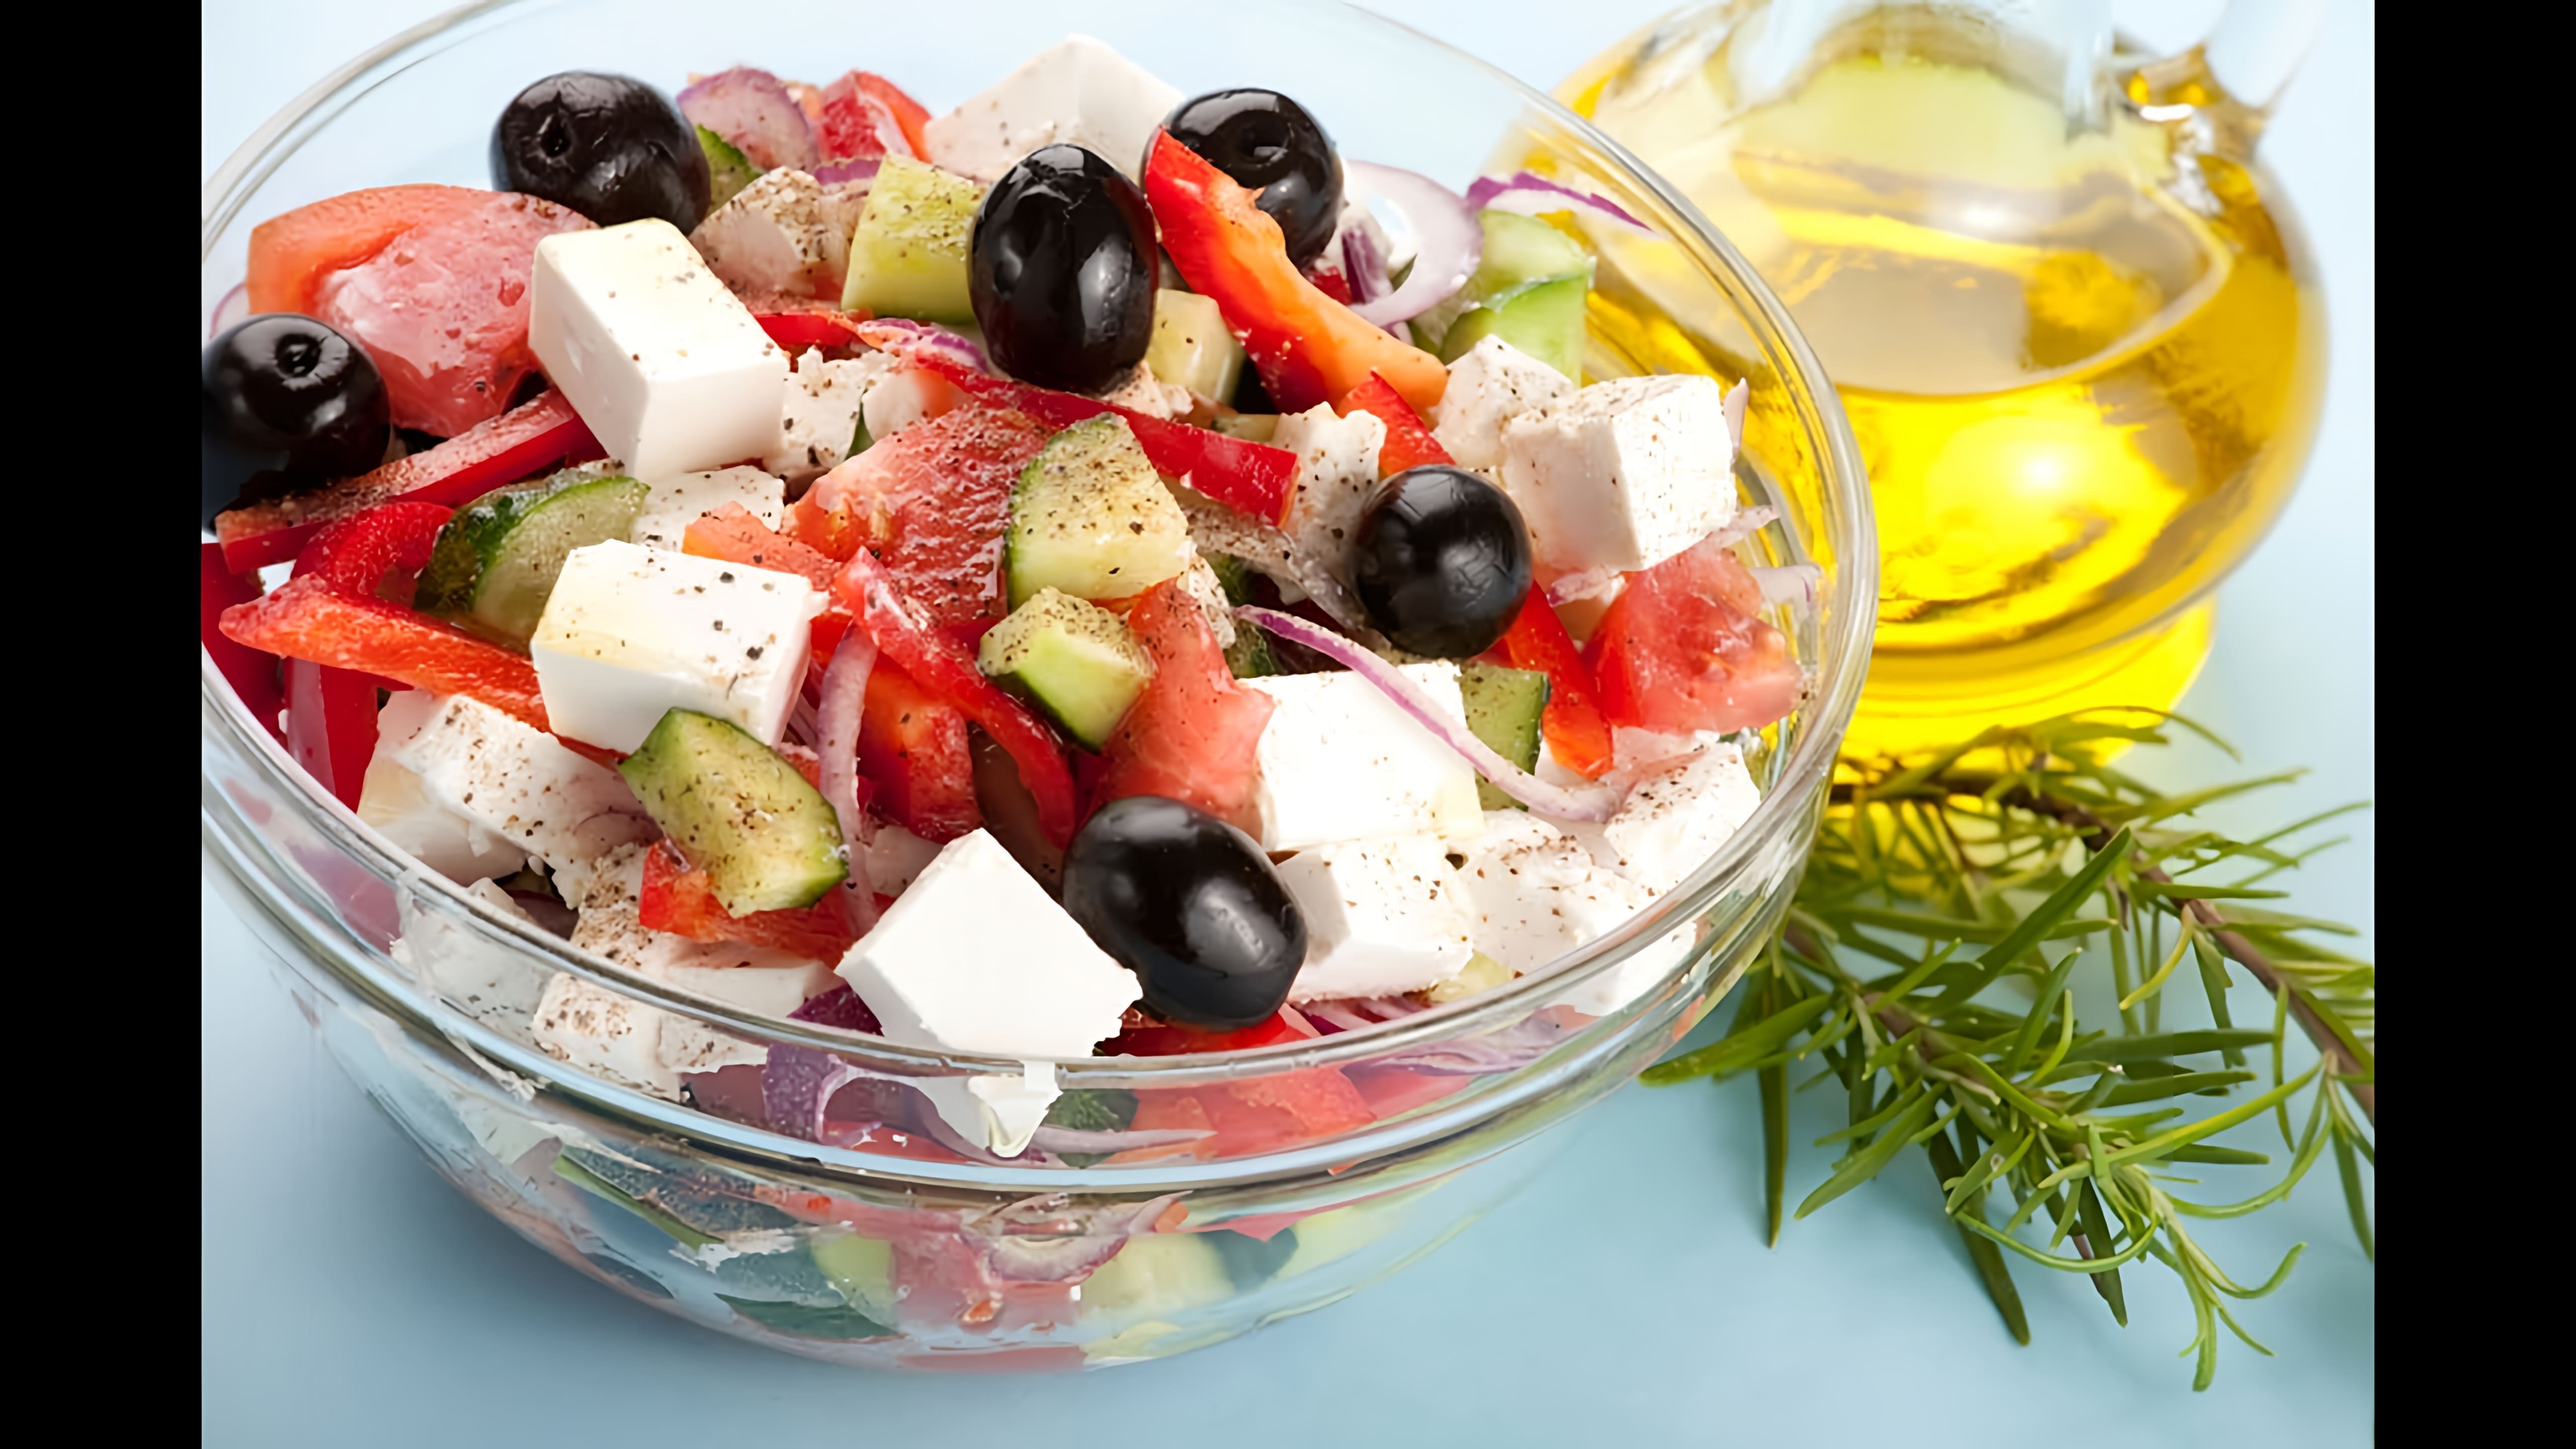 Греческий салат - это вкусное и полезное блюдо, которое можно приготовить в домашних условиях